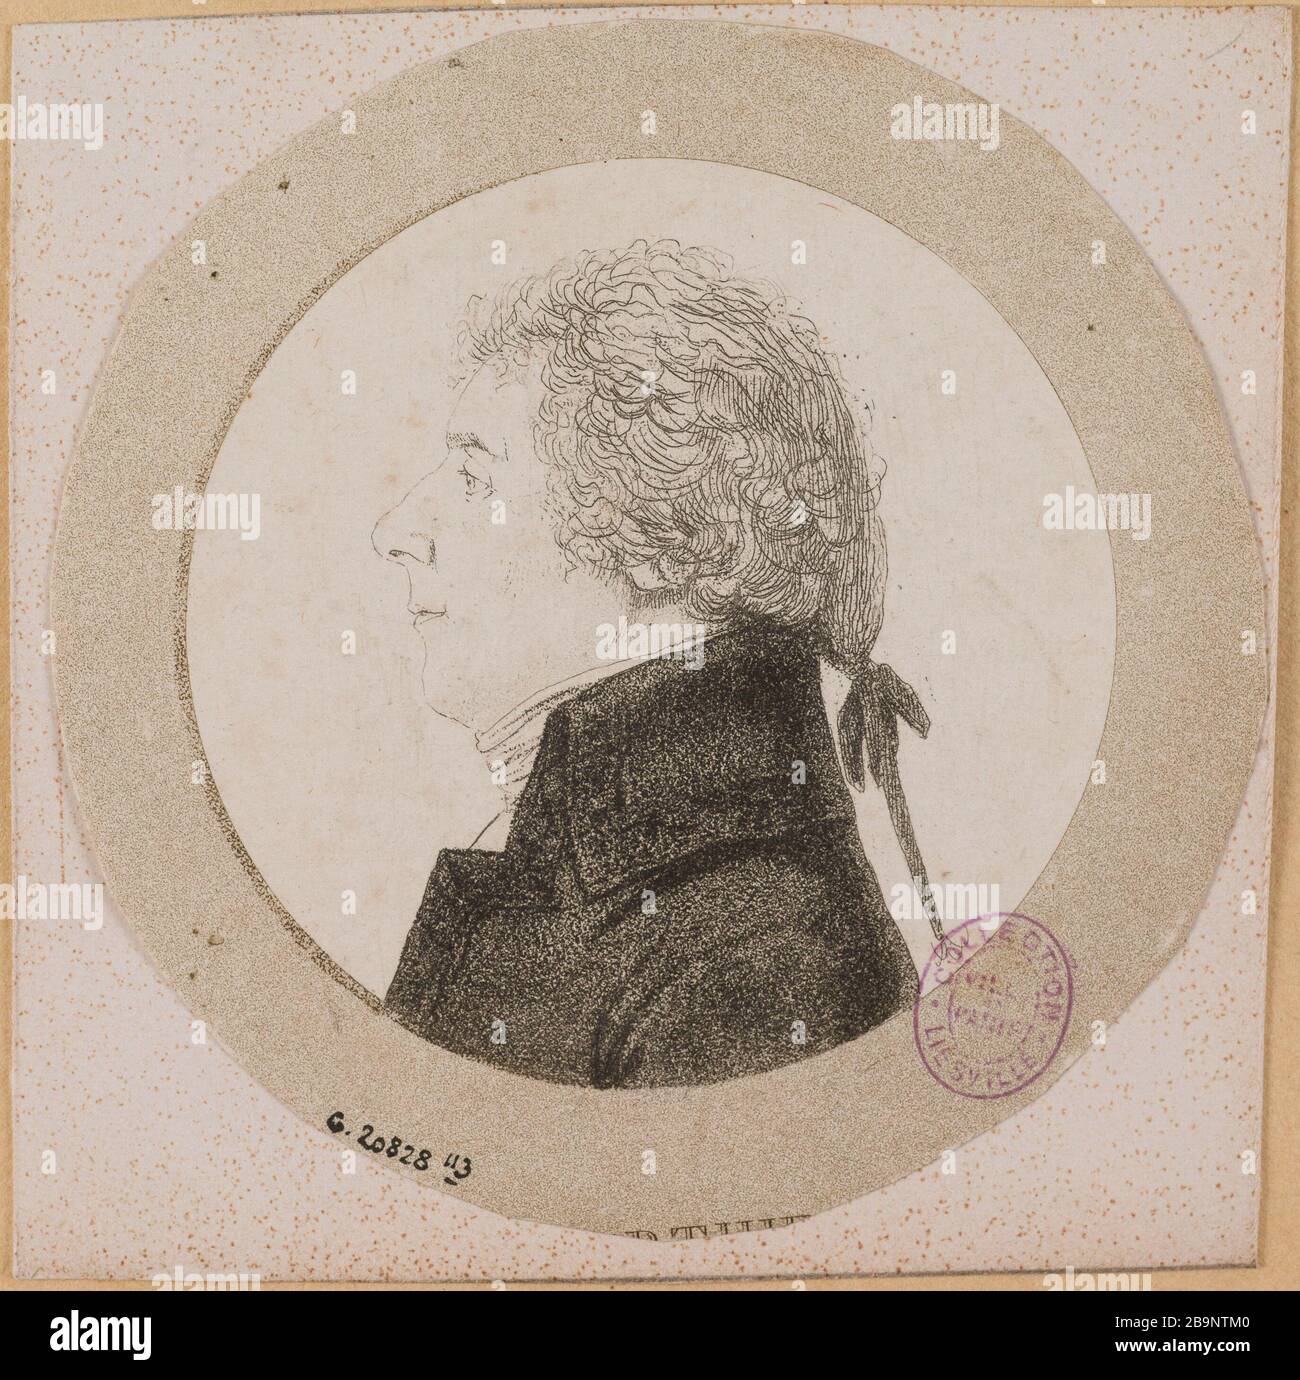 Portrait of Louis-Alexandre Berthier. André Dutertre (1753-1842). Portrait de Louis-Alexandre Berthier. Eau-forte, aquatinte. Paris, musée Carnavalet. Stock Photo